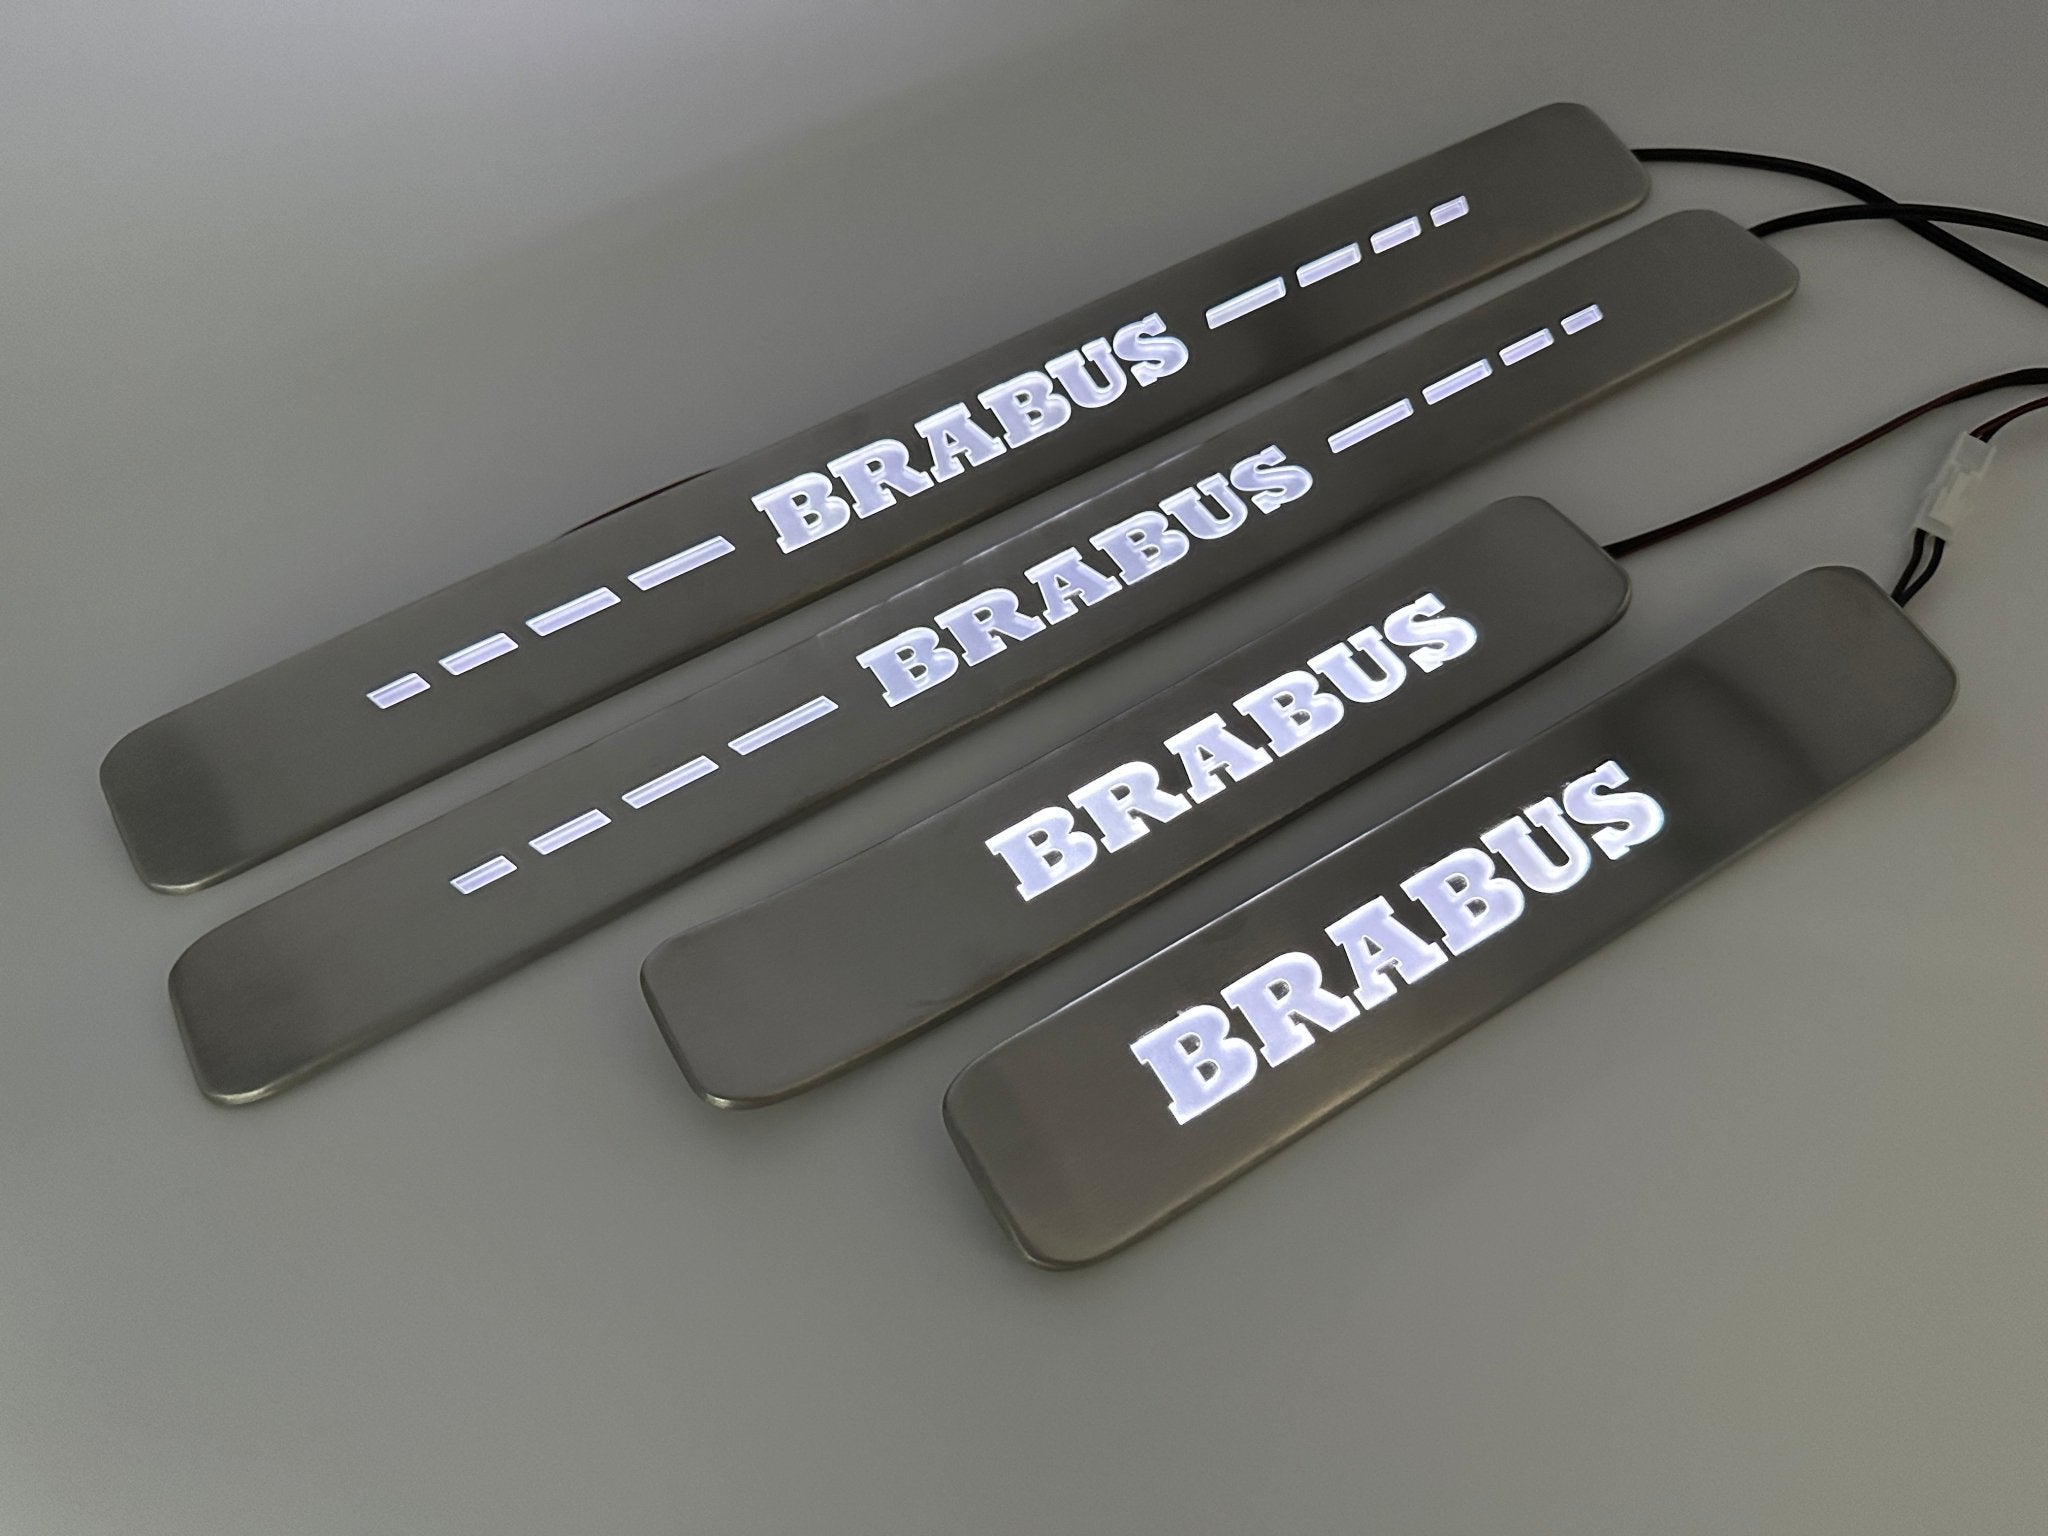 Einstiegsleisten im Brabus-Stil, Metall, weiße LED-Beleuchtung, 4 Stück, für Mercedes-Benz G-Wagon W463a W464